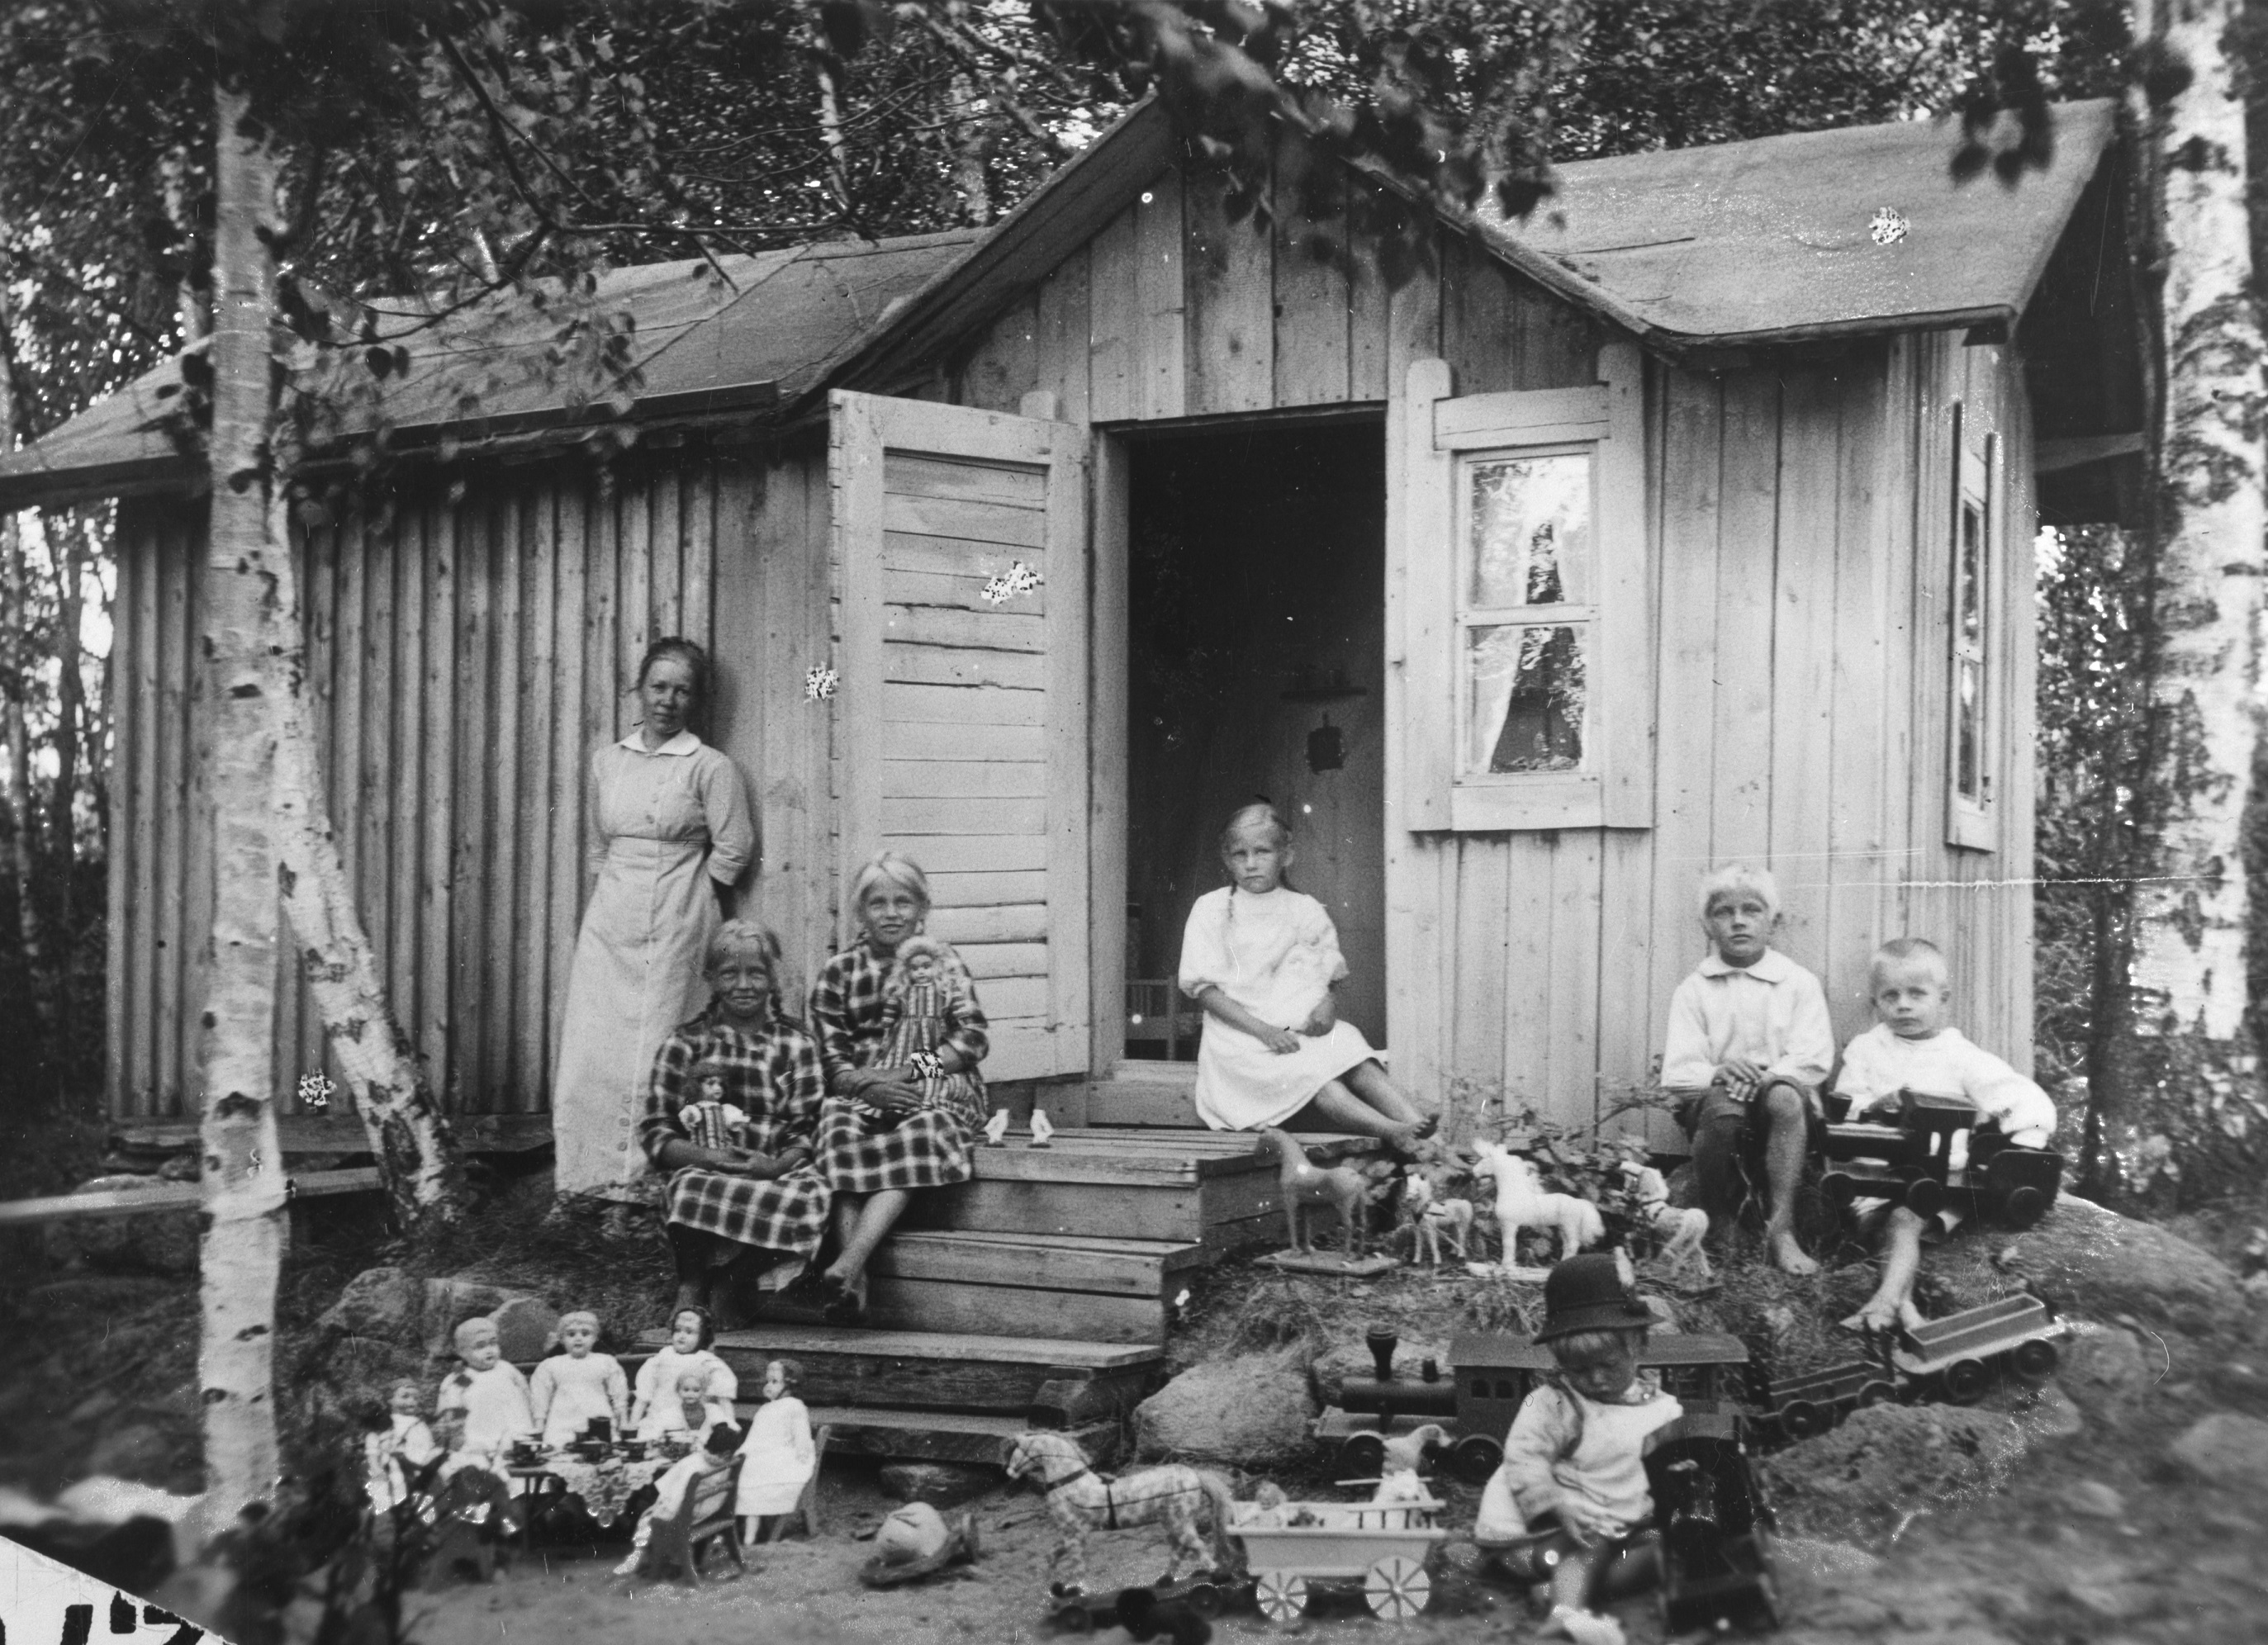 Kuvassa on puutalo. Talon ulkopuolella seisoo nainen vasemmalla puolella. Rappusilla ja talon vasemmalla puolella istuu kuusi lasta. Kuvan etuosassa näkyy leikkikaluja.